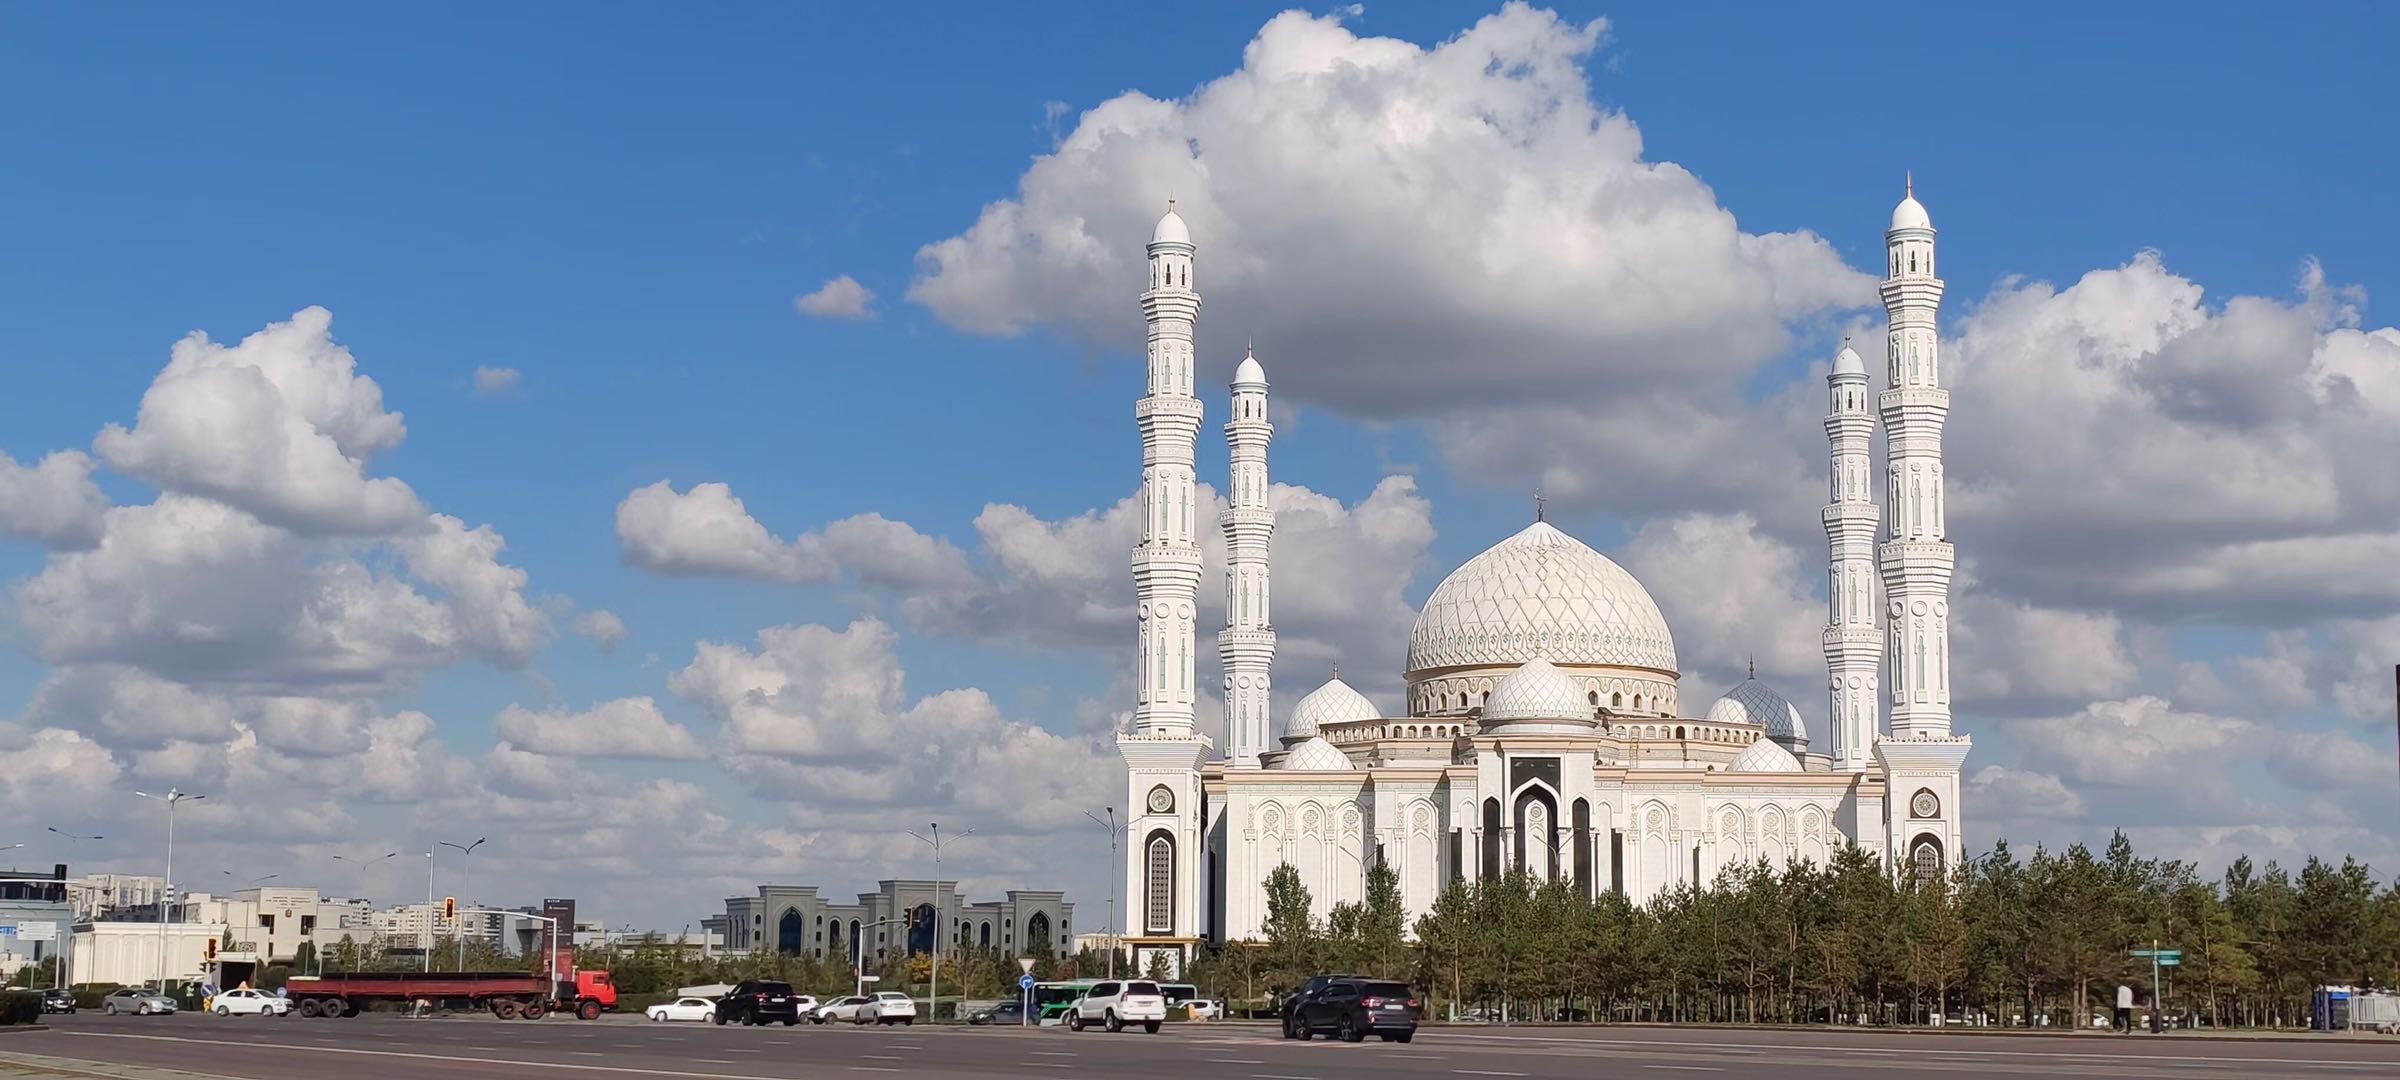 哈萨克斯坦首都阿斯塔纳一日游随拍，只有25年建城史的世界第二冷的首都的建筑和气势给人留下了深刻印象。